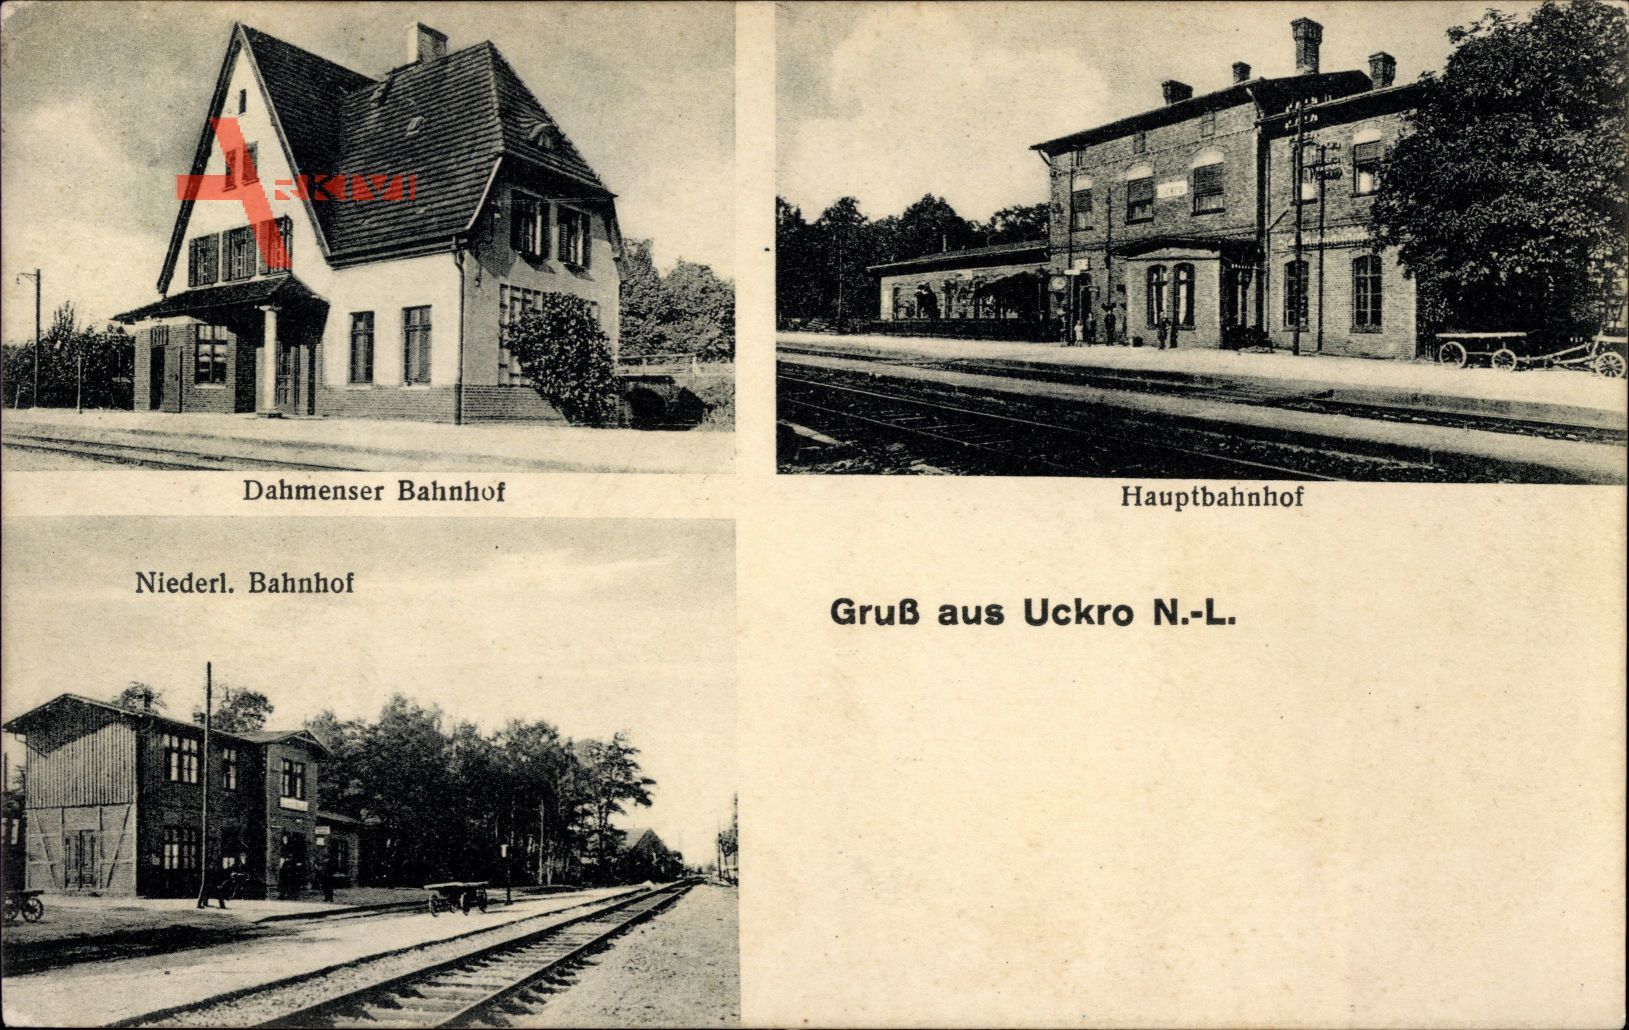 Uckro Luckau Brandenburg, Dahmenser Bahnhof, Niederlausitzer Bahnhof, Hauptbahnhof